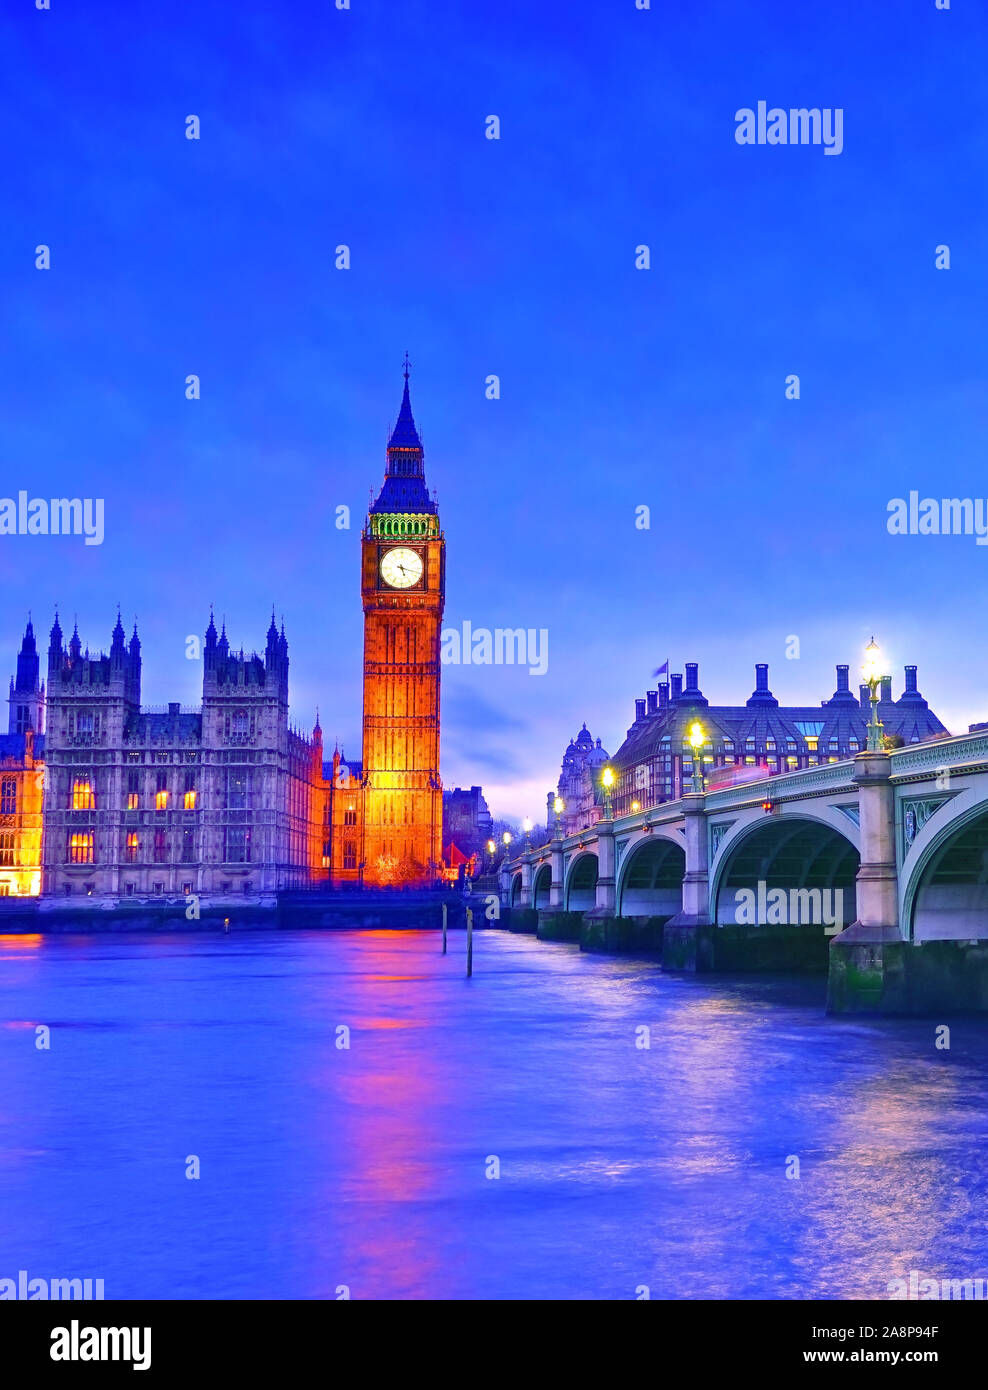 Vue sur le Parlement et le pont Westminster le long de la Tamise à Londres la nuit. Banque D'Images